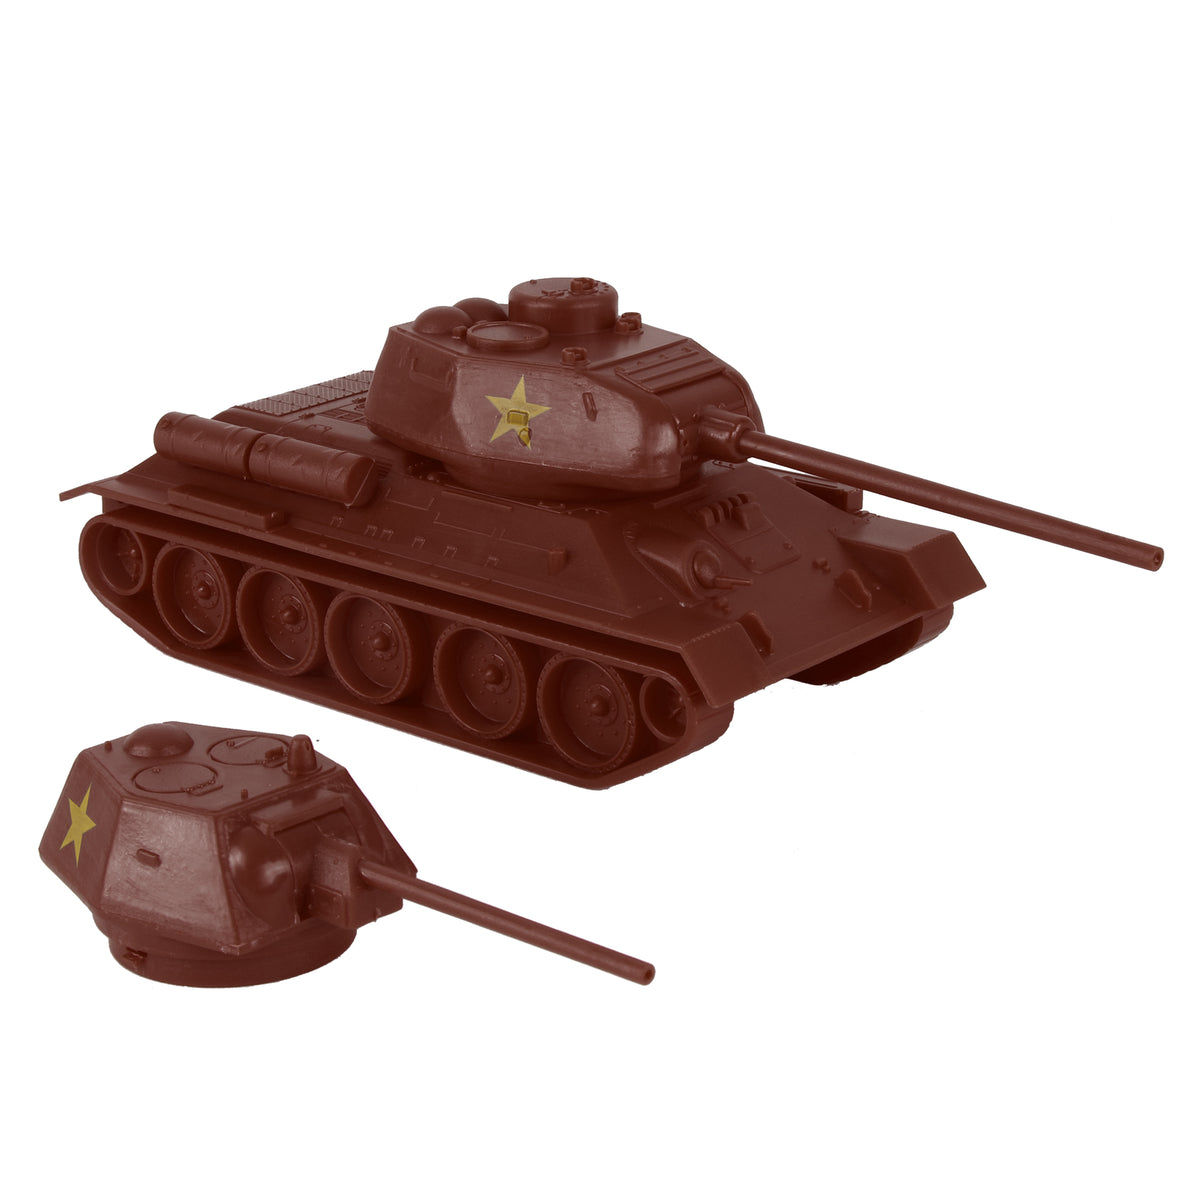 russian tanks ww2 t34